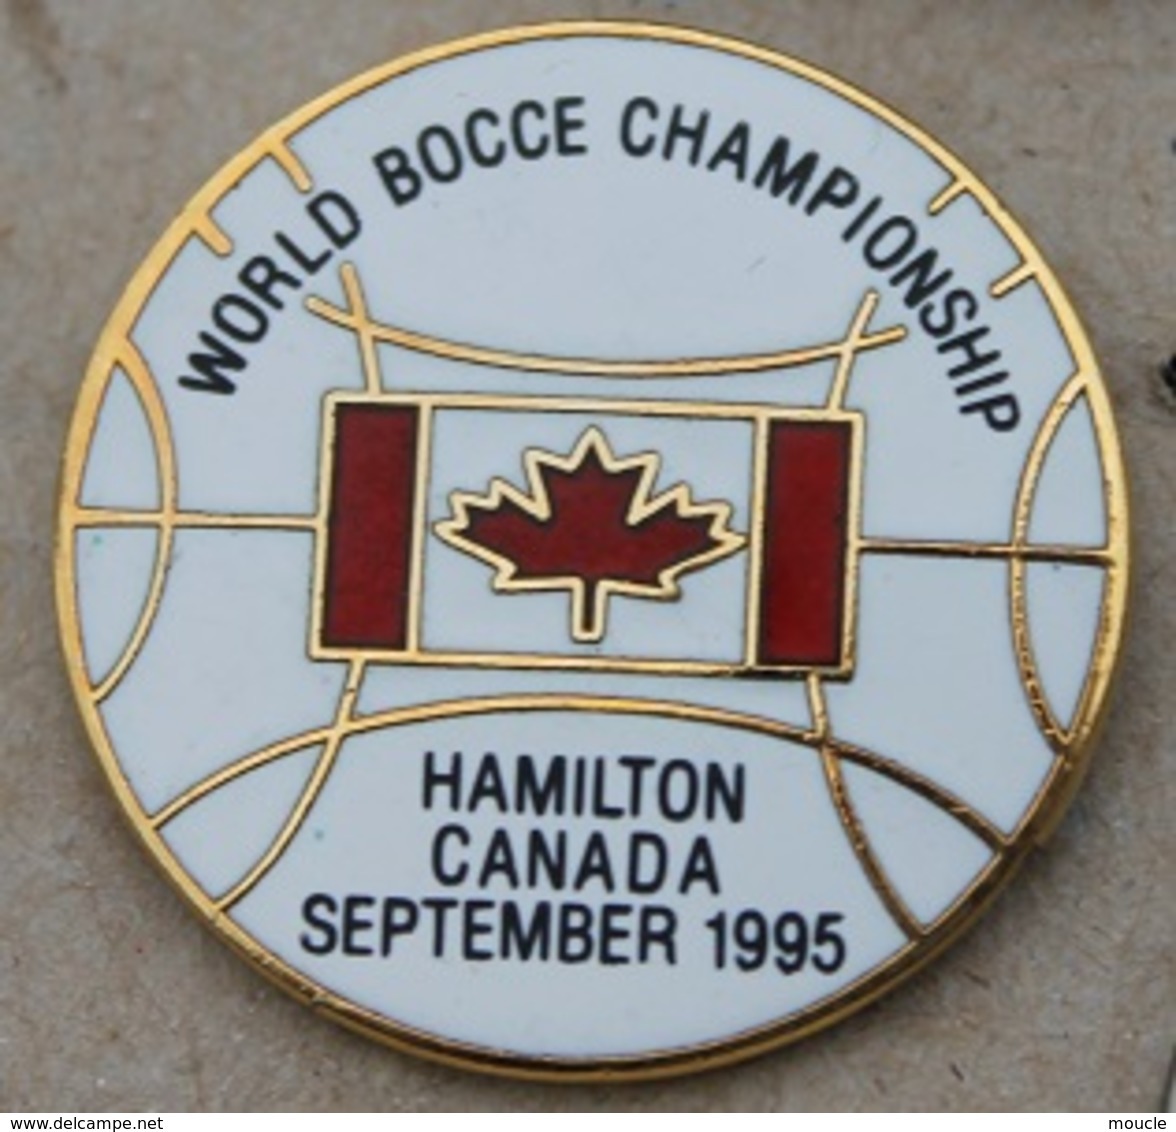 WORLD BOCCE CHAMPIONSHIP - HAMILTON CANADA SEPTEMBER 1995 - FEUILLE D'ERABLE - BOULE - PETANQUE -      (25) - Petanque